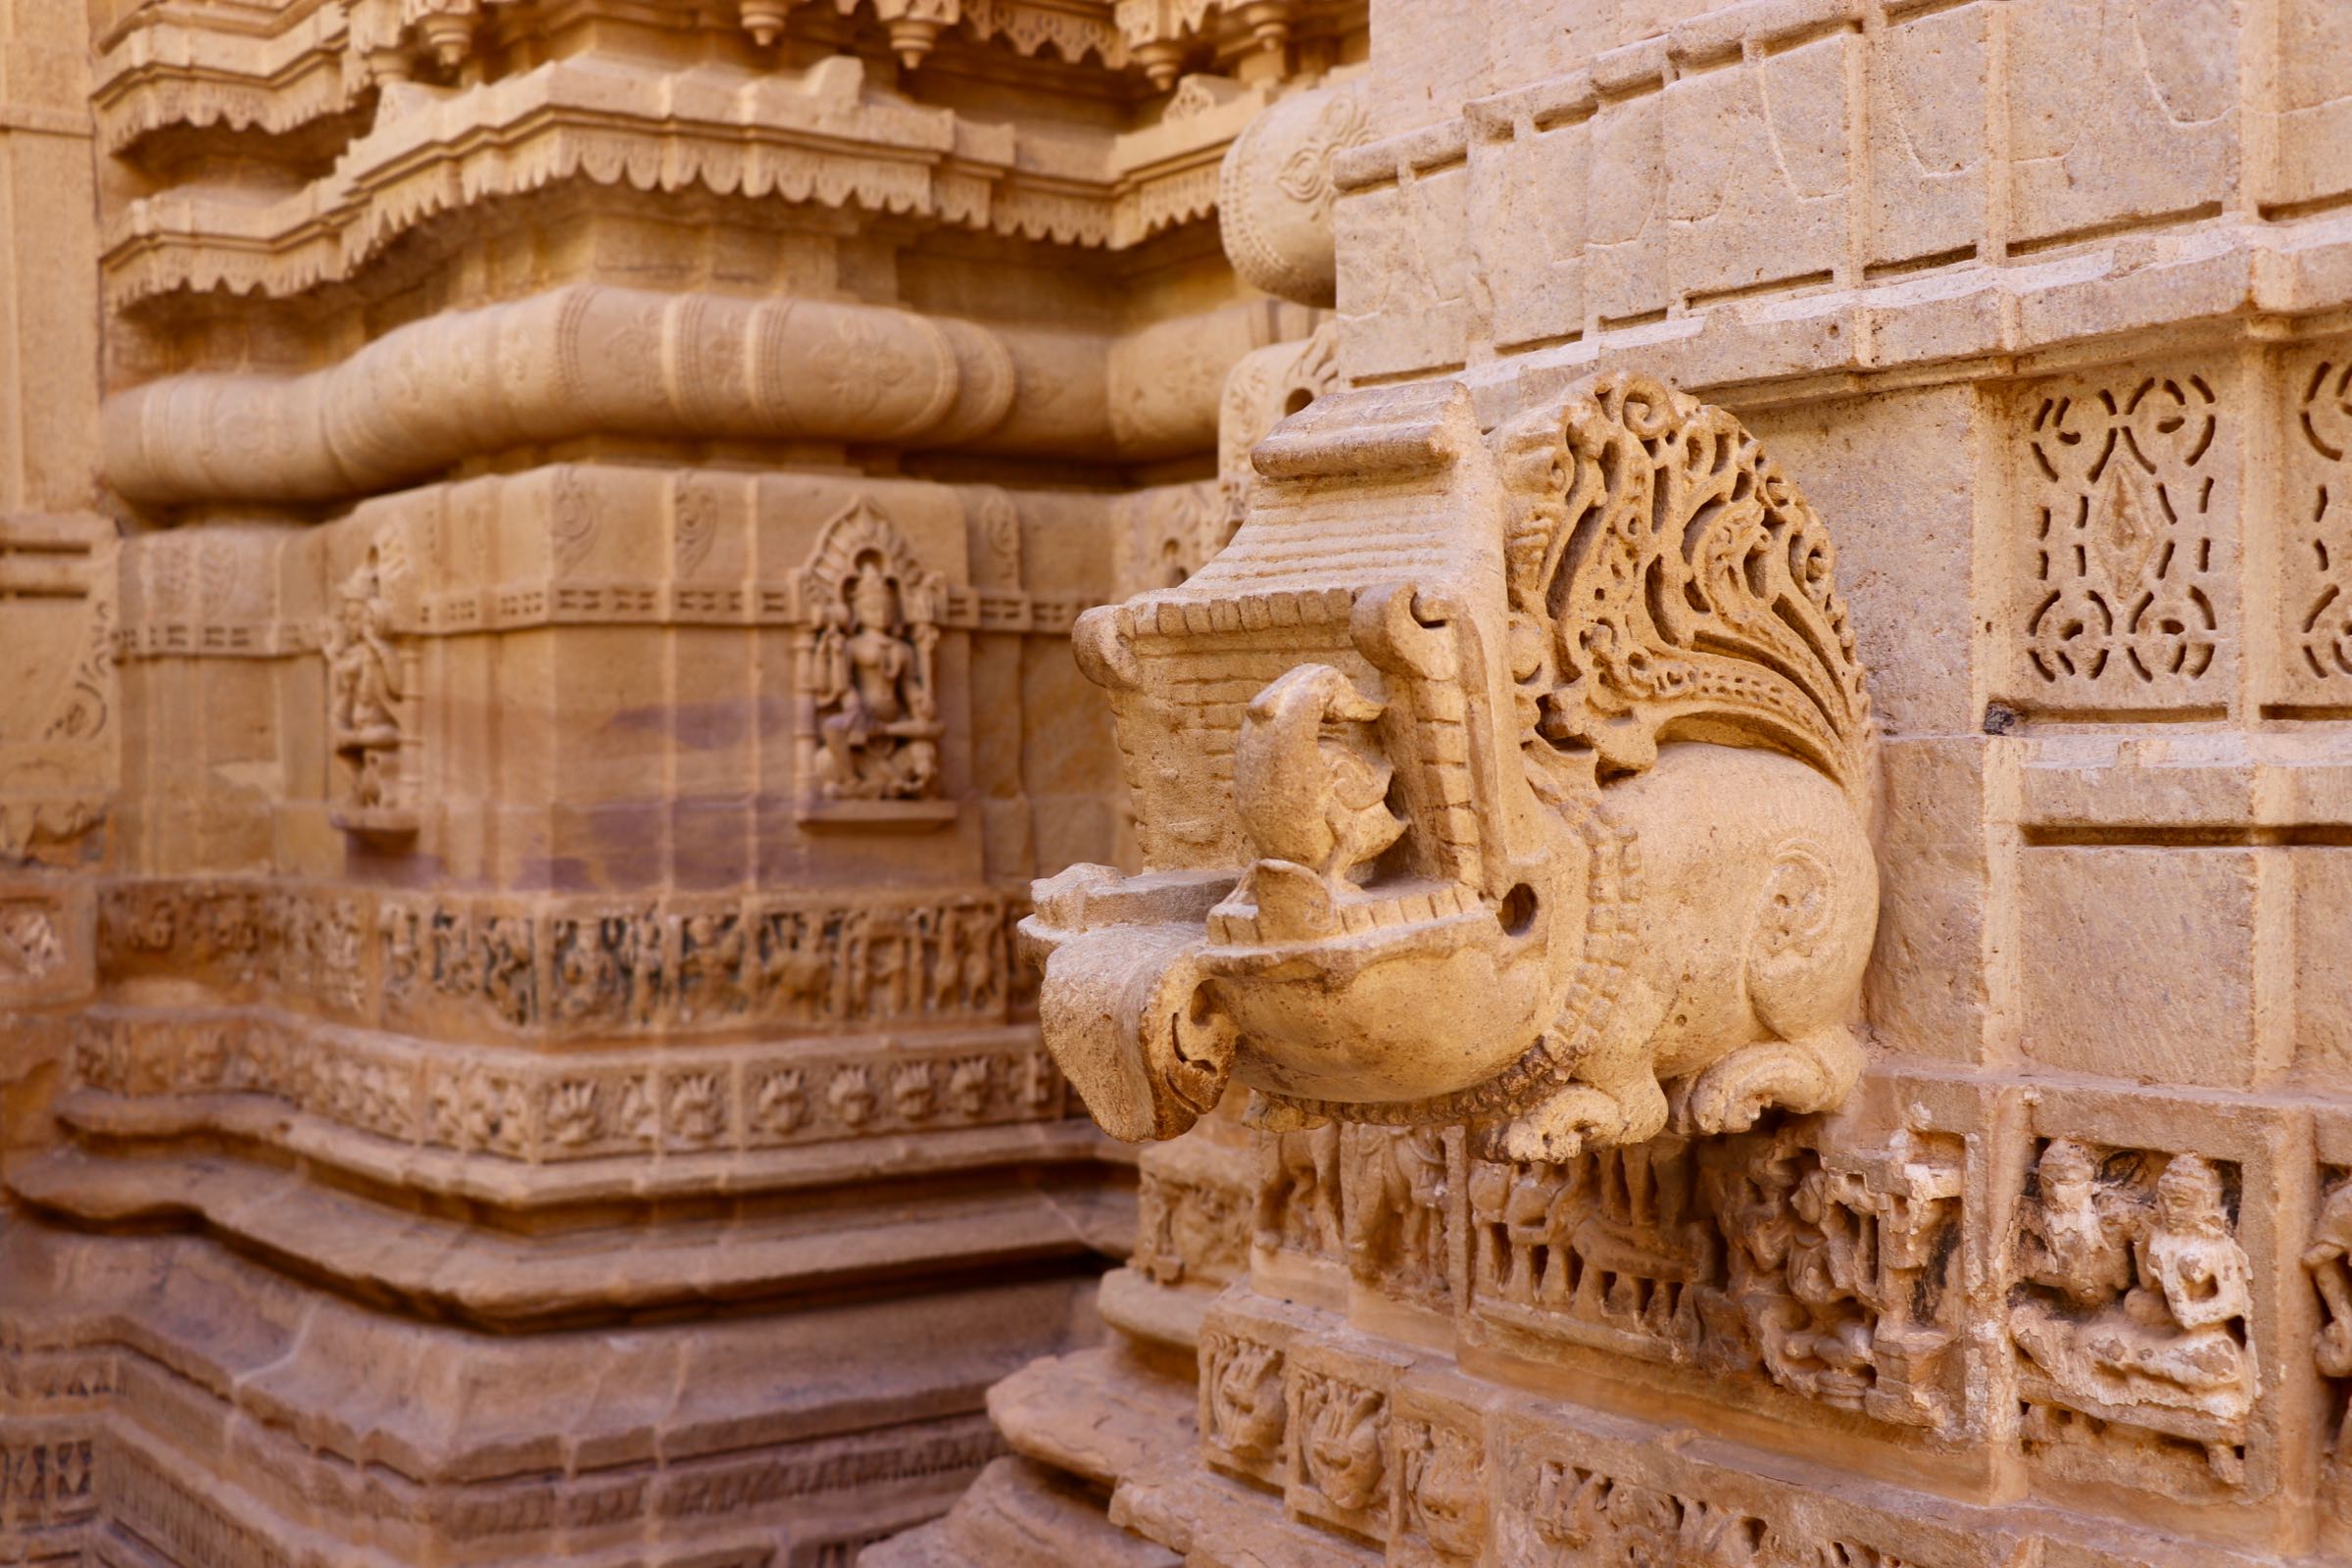 Dekoration in einem Jaintempel in Jaisalmer, Indien